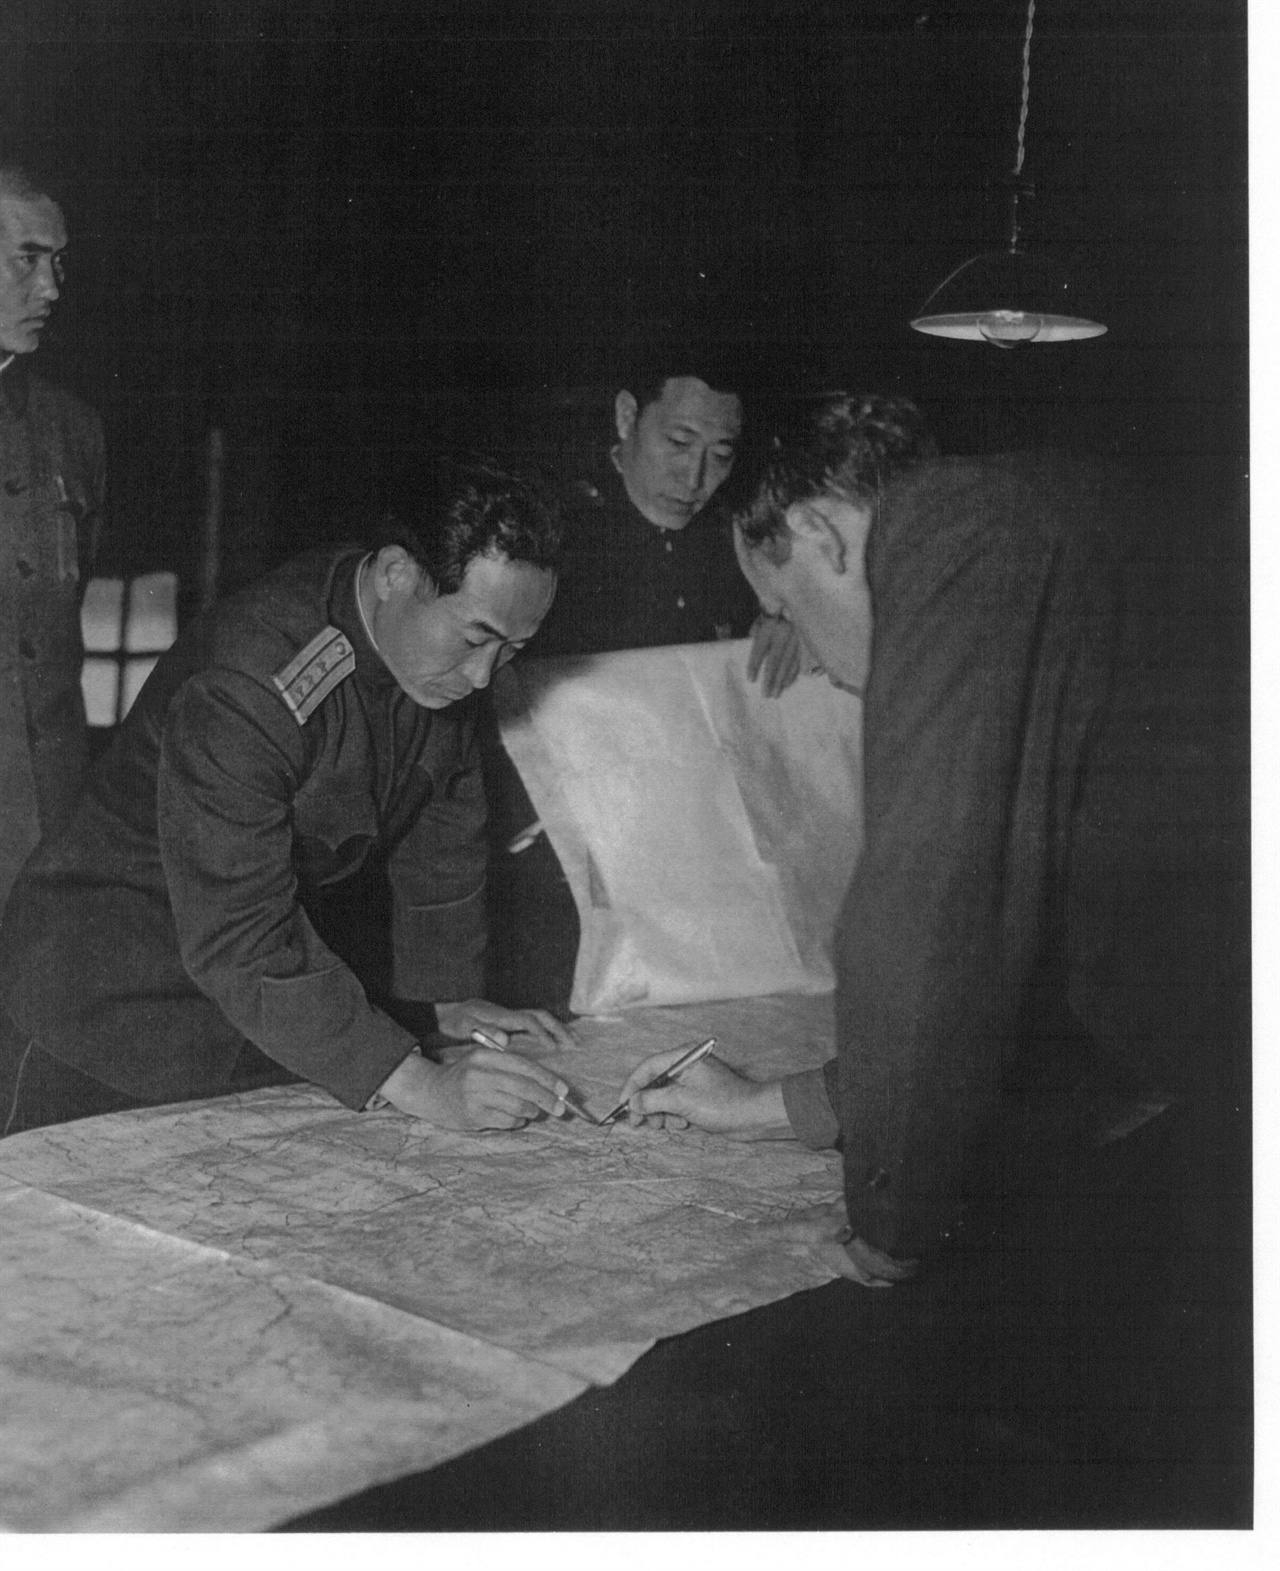  1951. 11. 27. 판문점 정전회담장에서 북한 측 장평산 대표와 유엔군 측 머레이 대표가 지도를 펴고 휴전선 획정을 협의하면서 선을 긋고 있다.